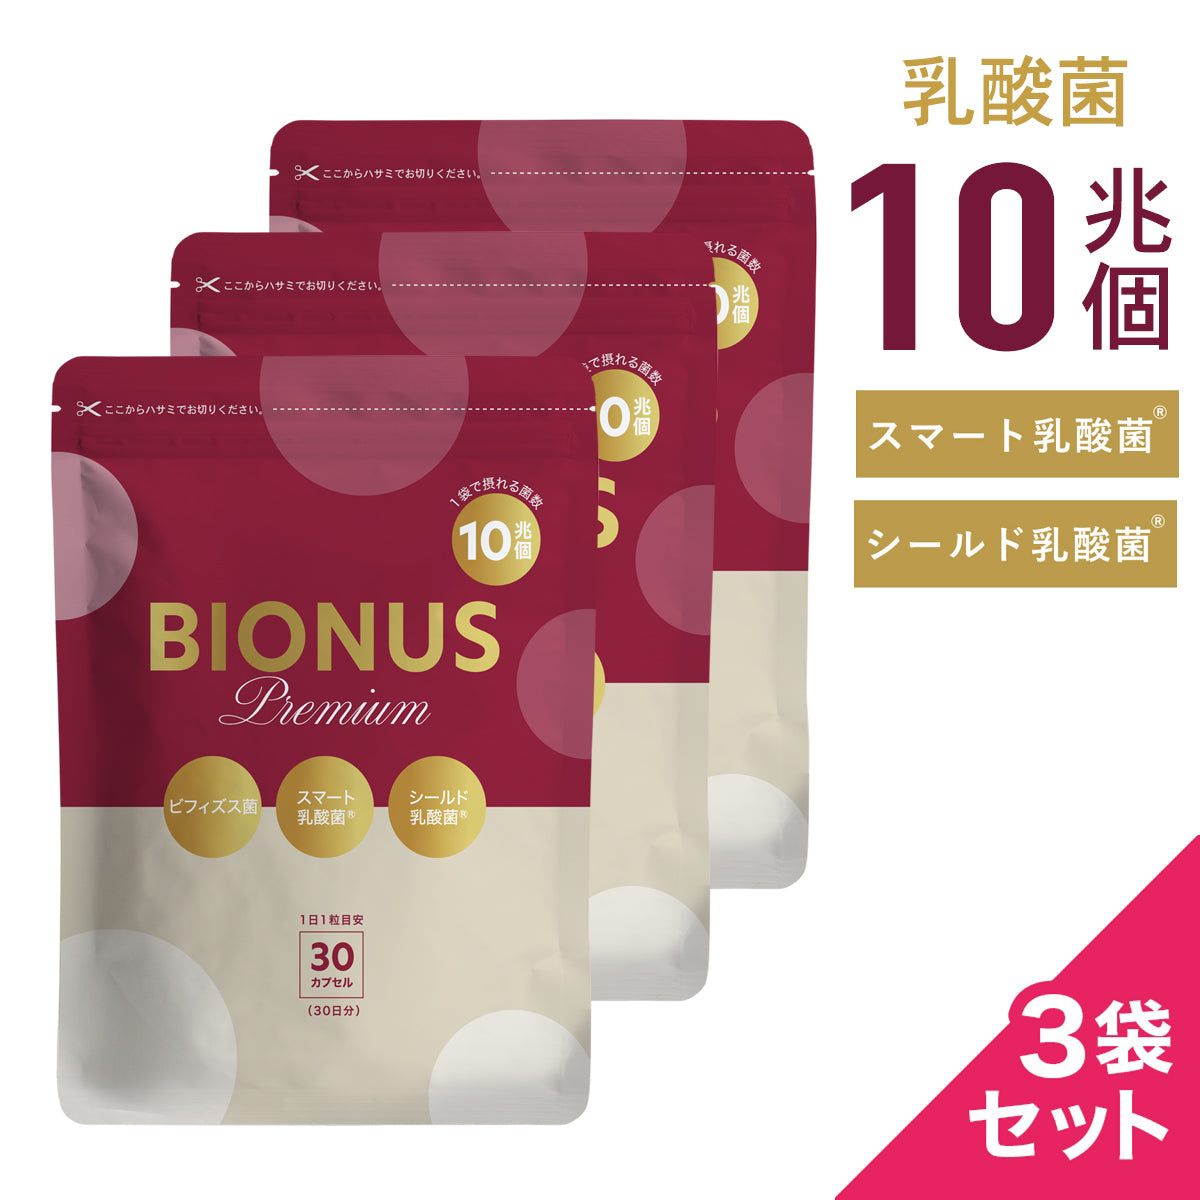 ビオナス 乳酸菌サプリプレミアム3袋セット